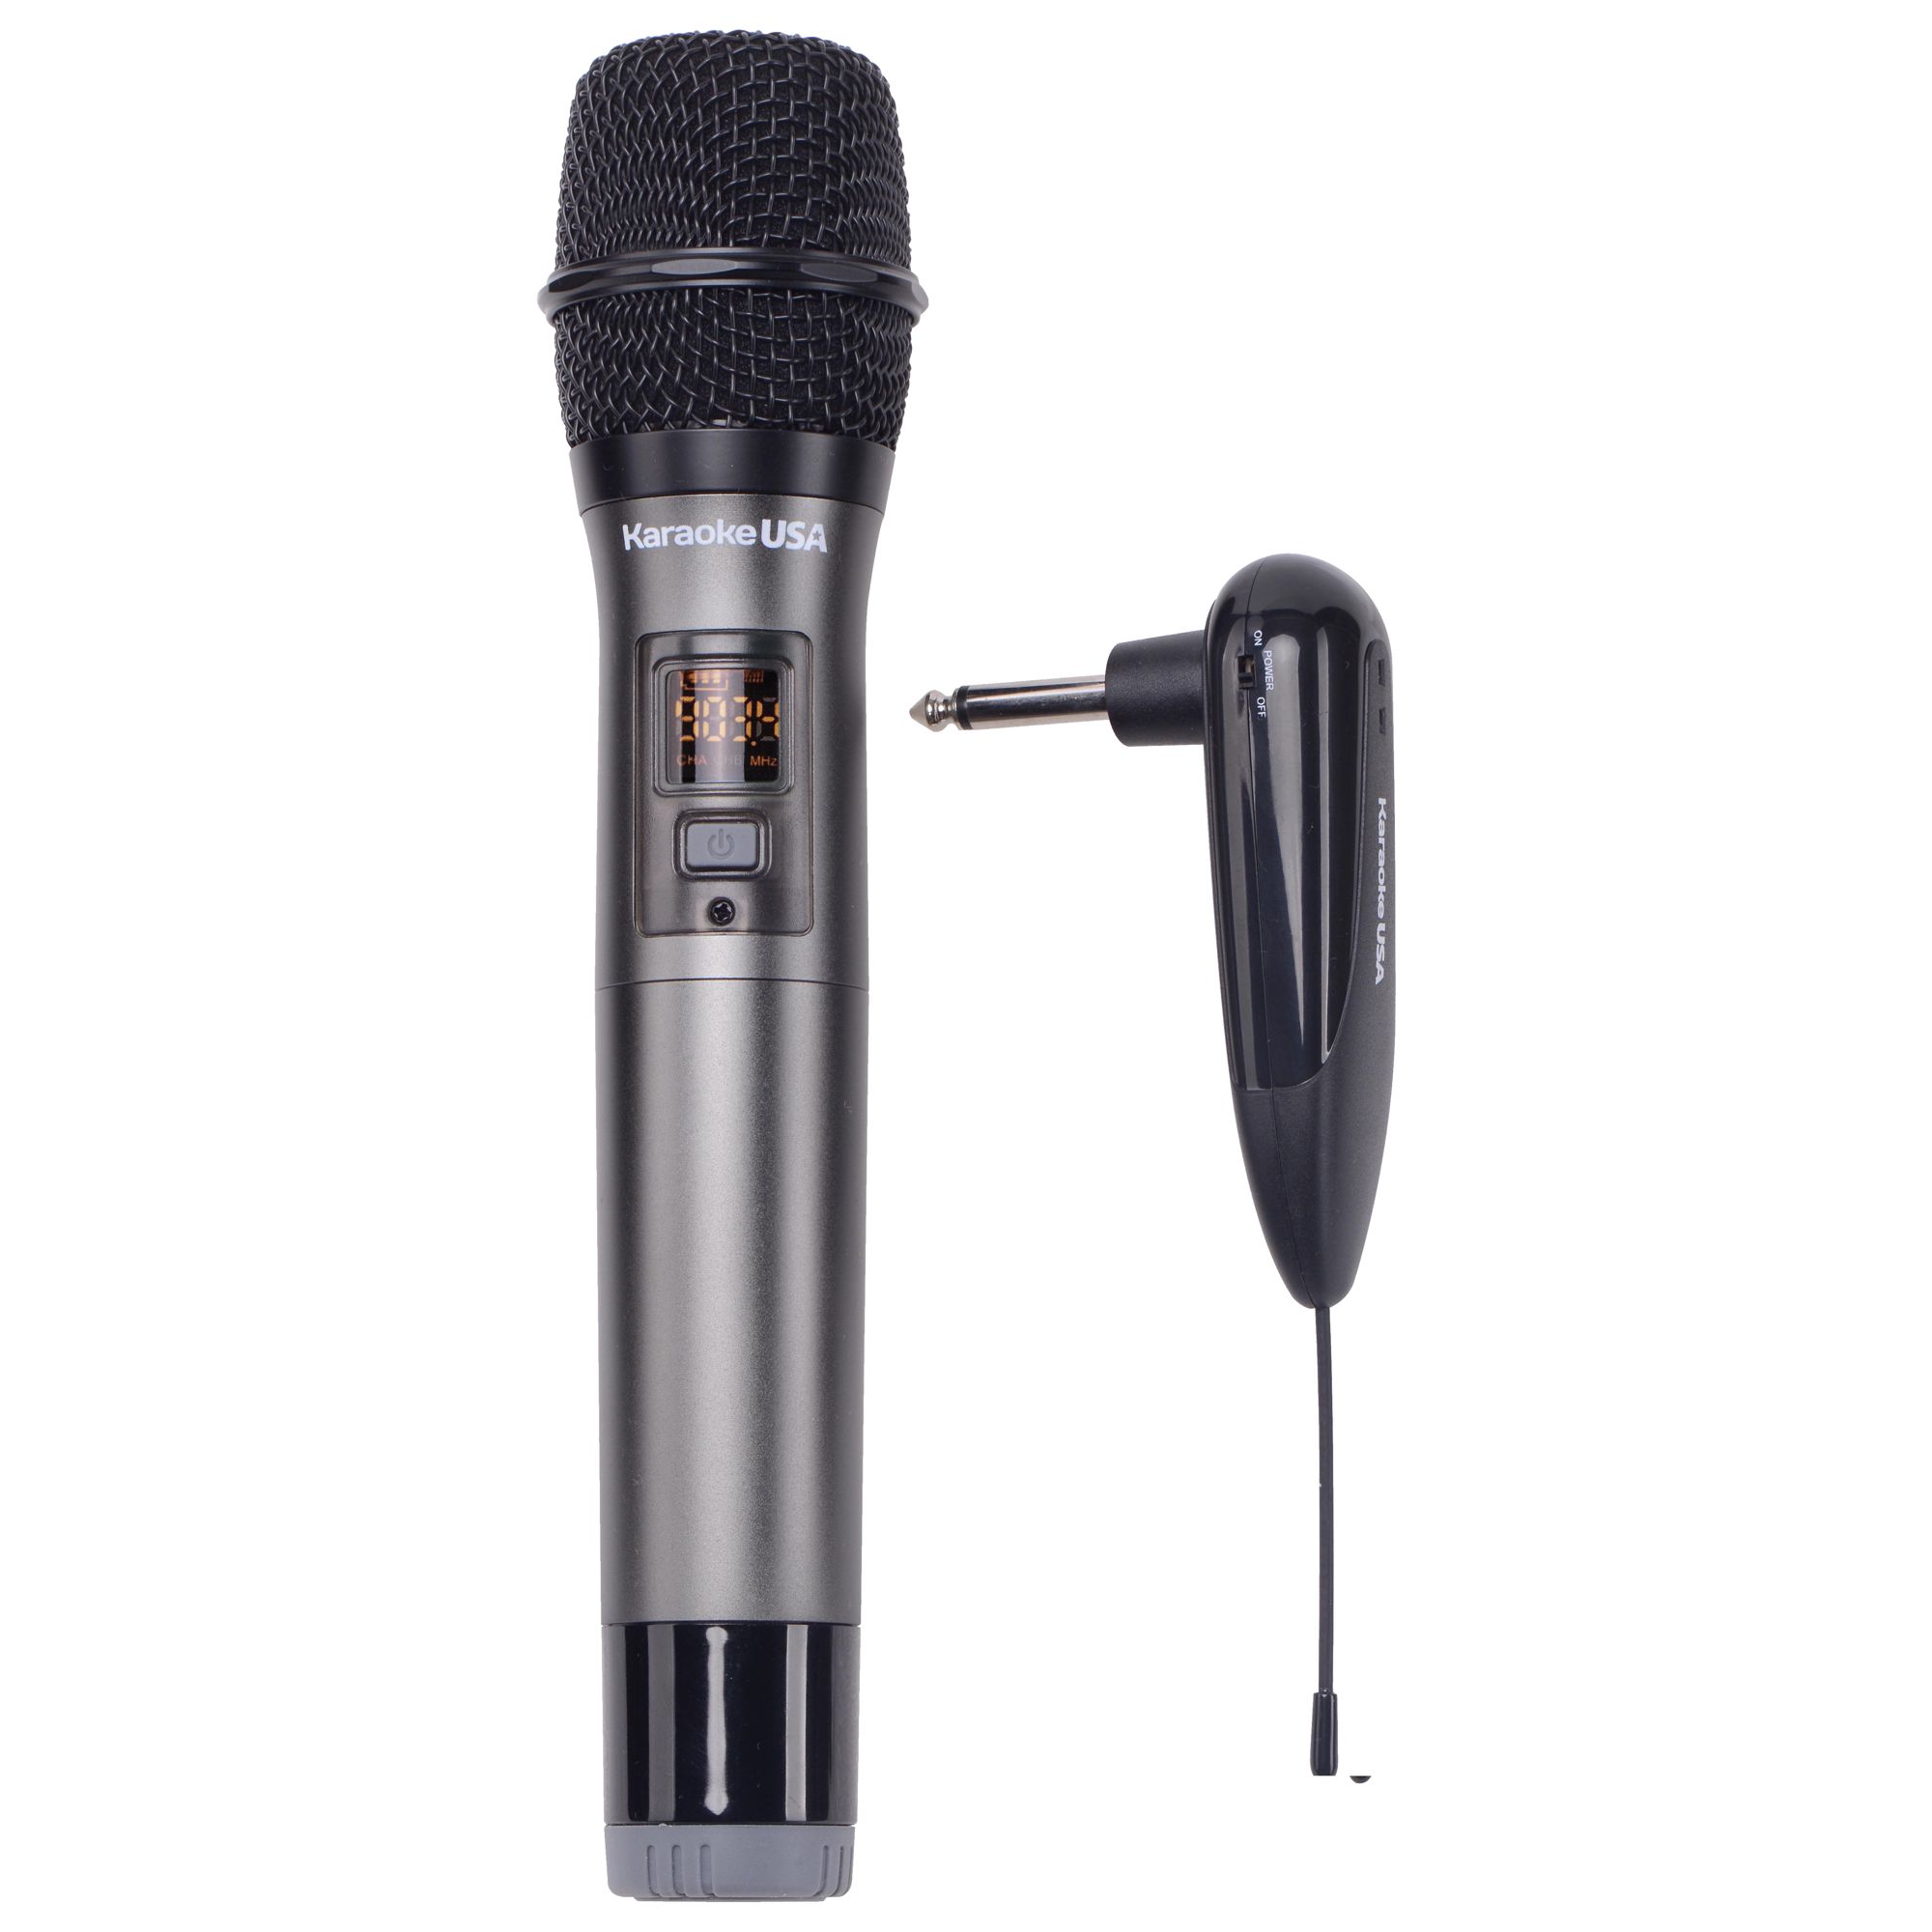 WM900 - 900 MHz UHF Wireless Microphone